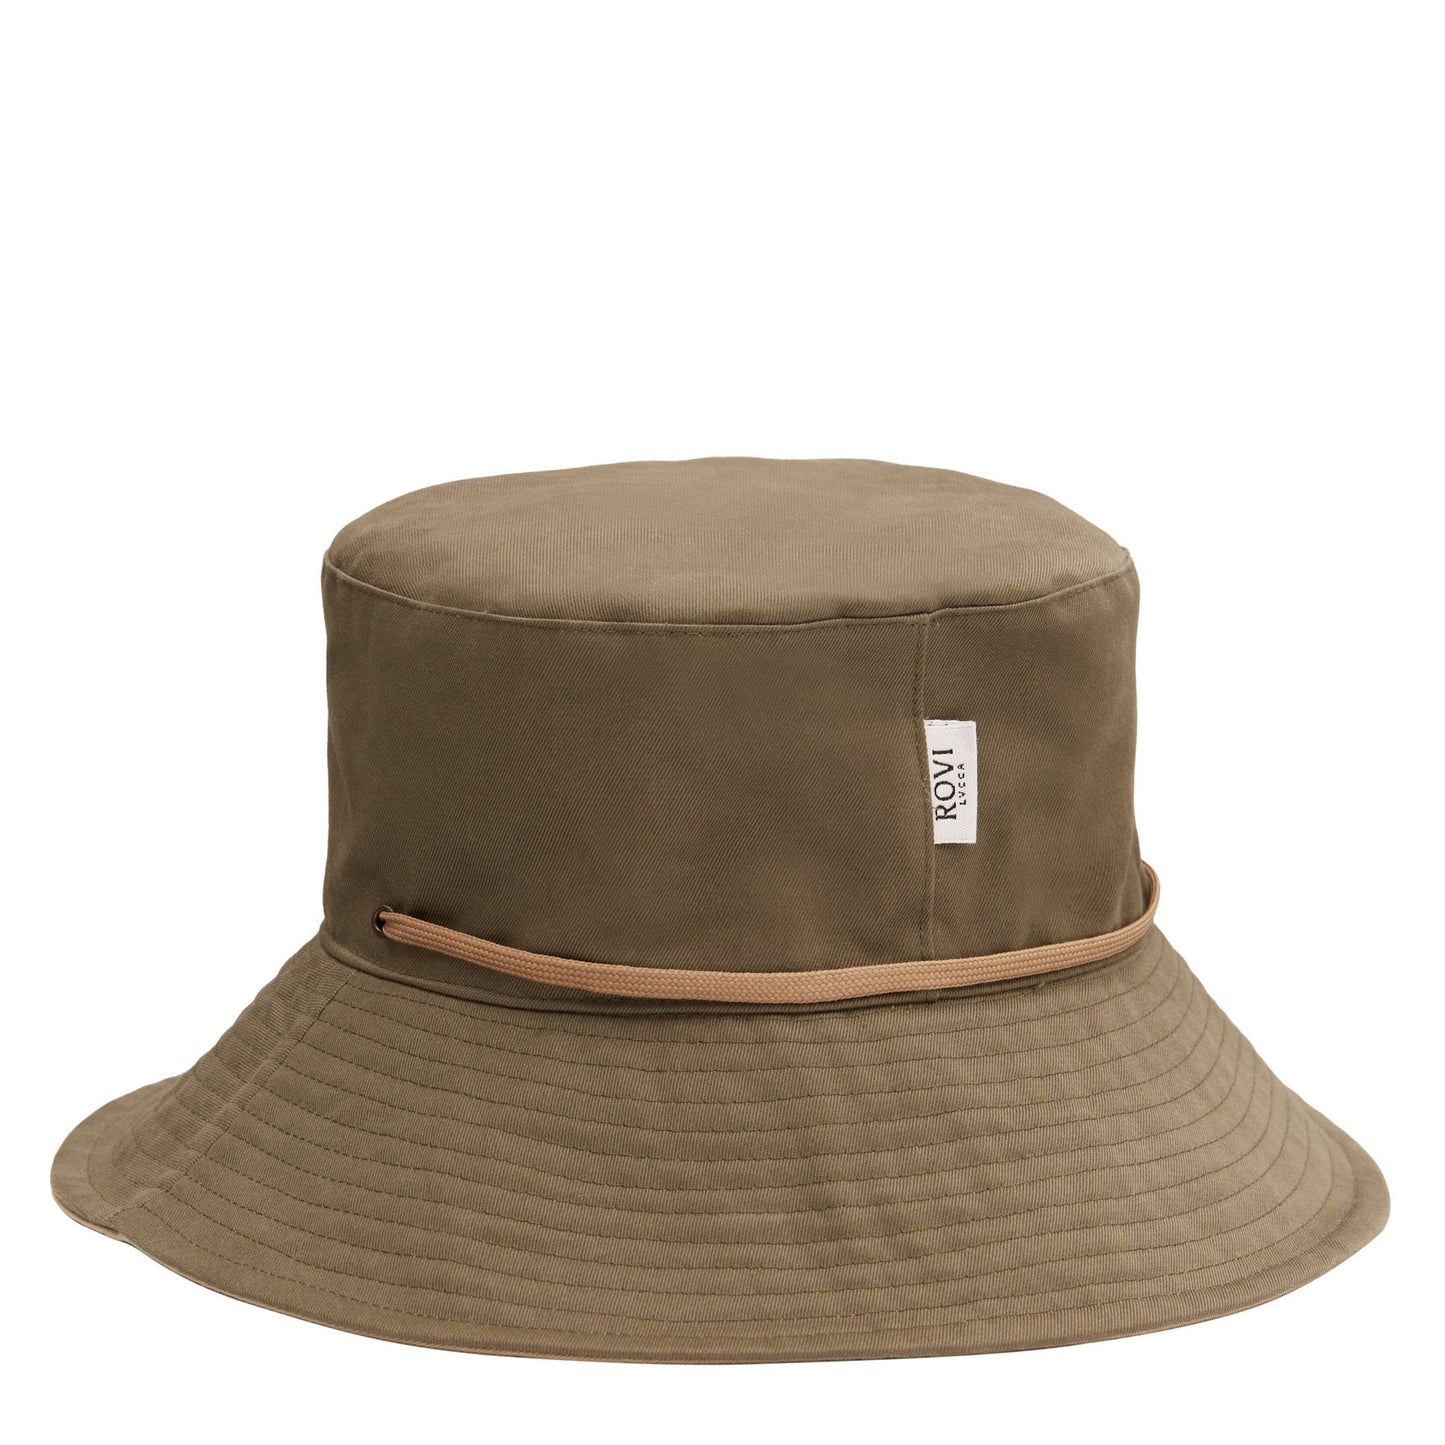 Garden Hat in Green and Beige Cotton twill